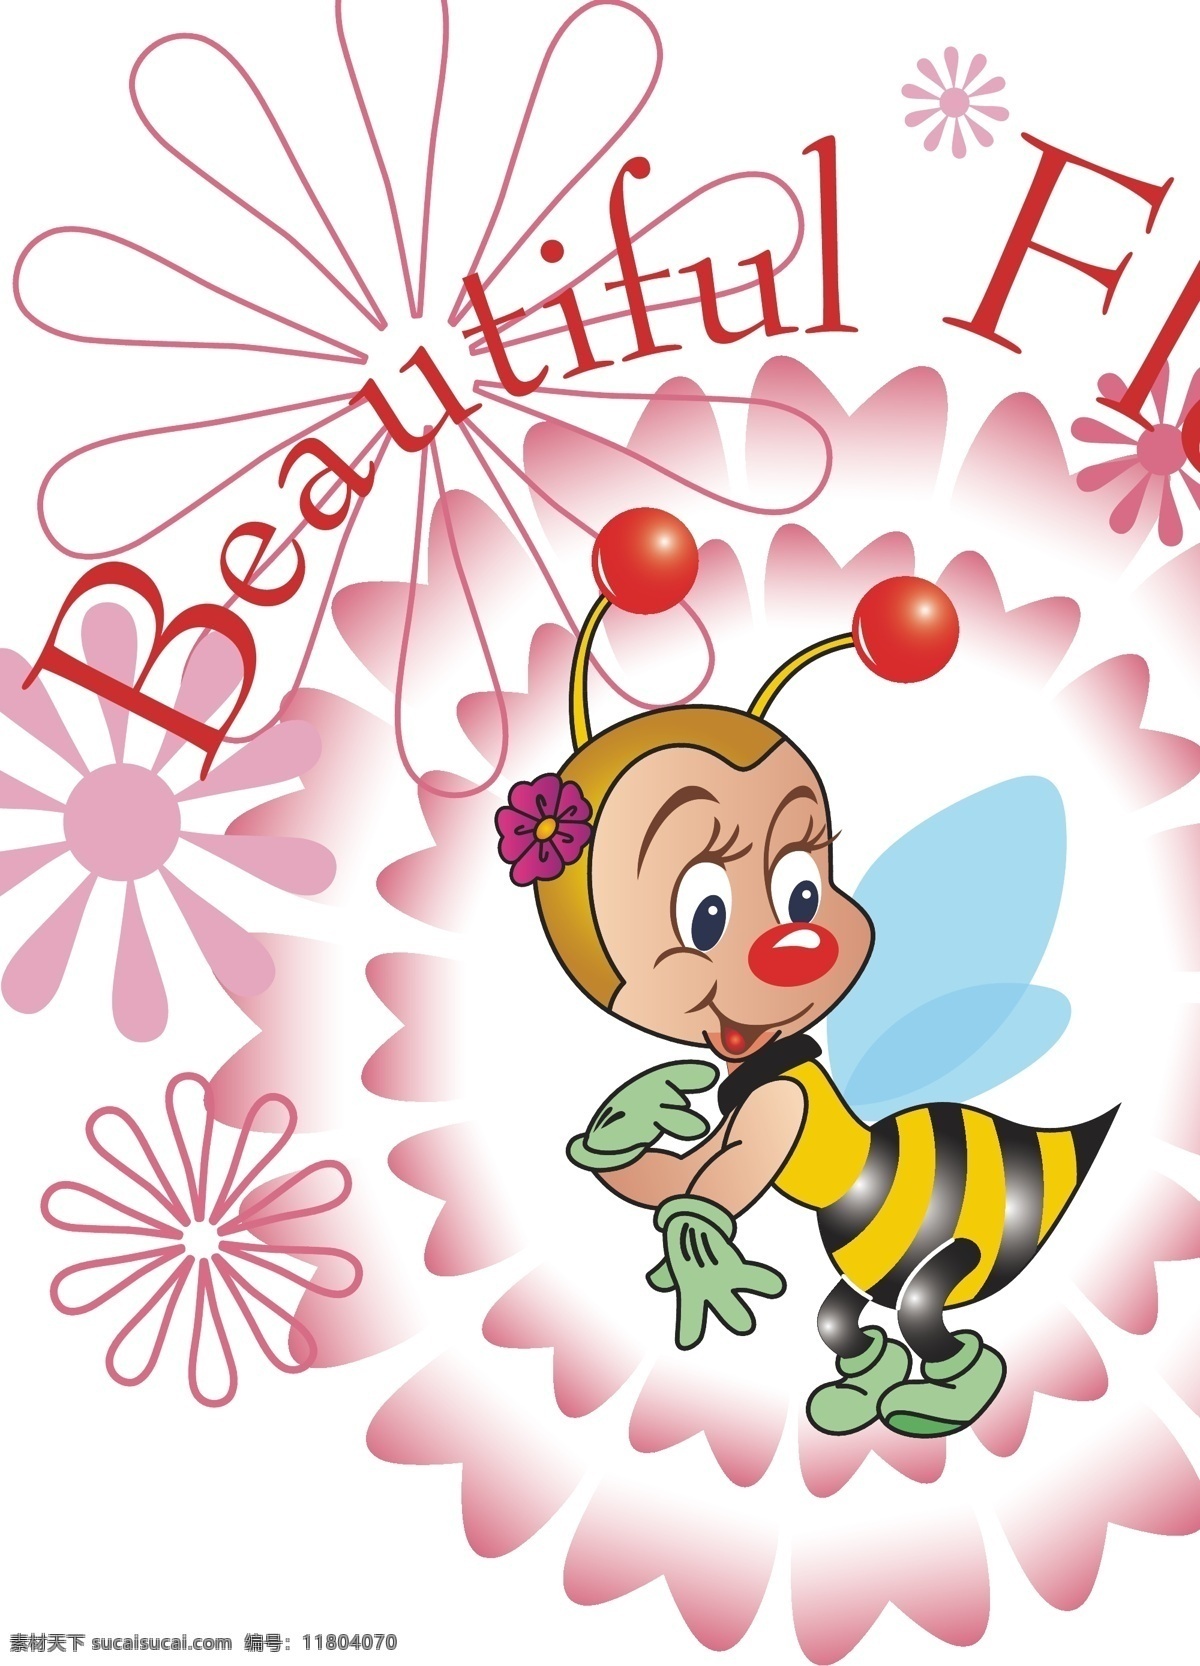 花型 蜜蜂 beautiful 服装设计 卡通 衣服 花型蜜蜂 矢量 其他服装素材